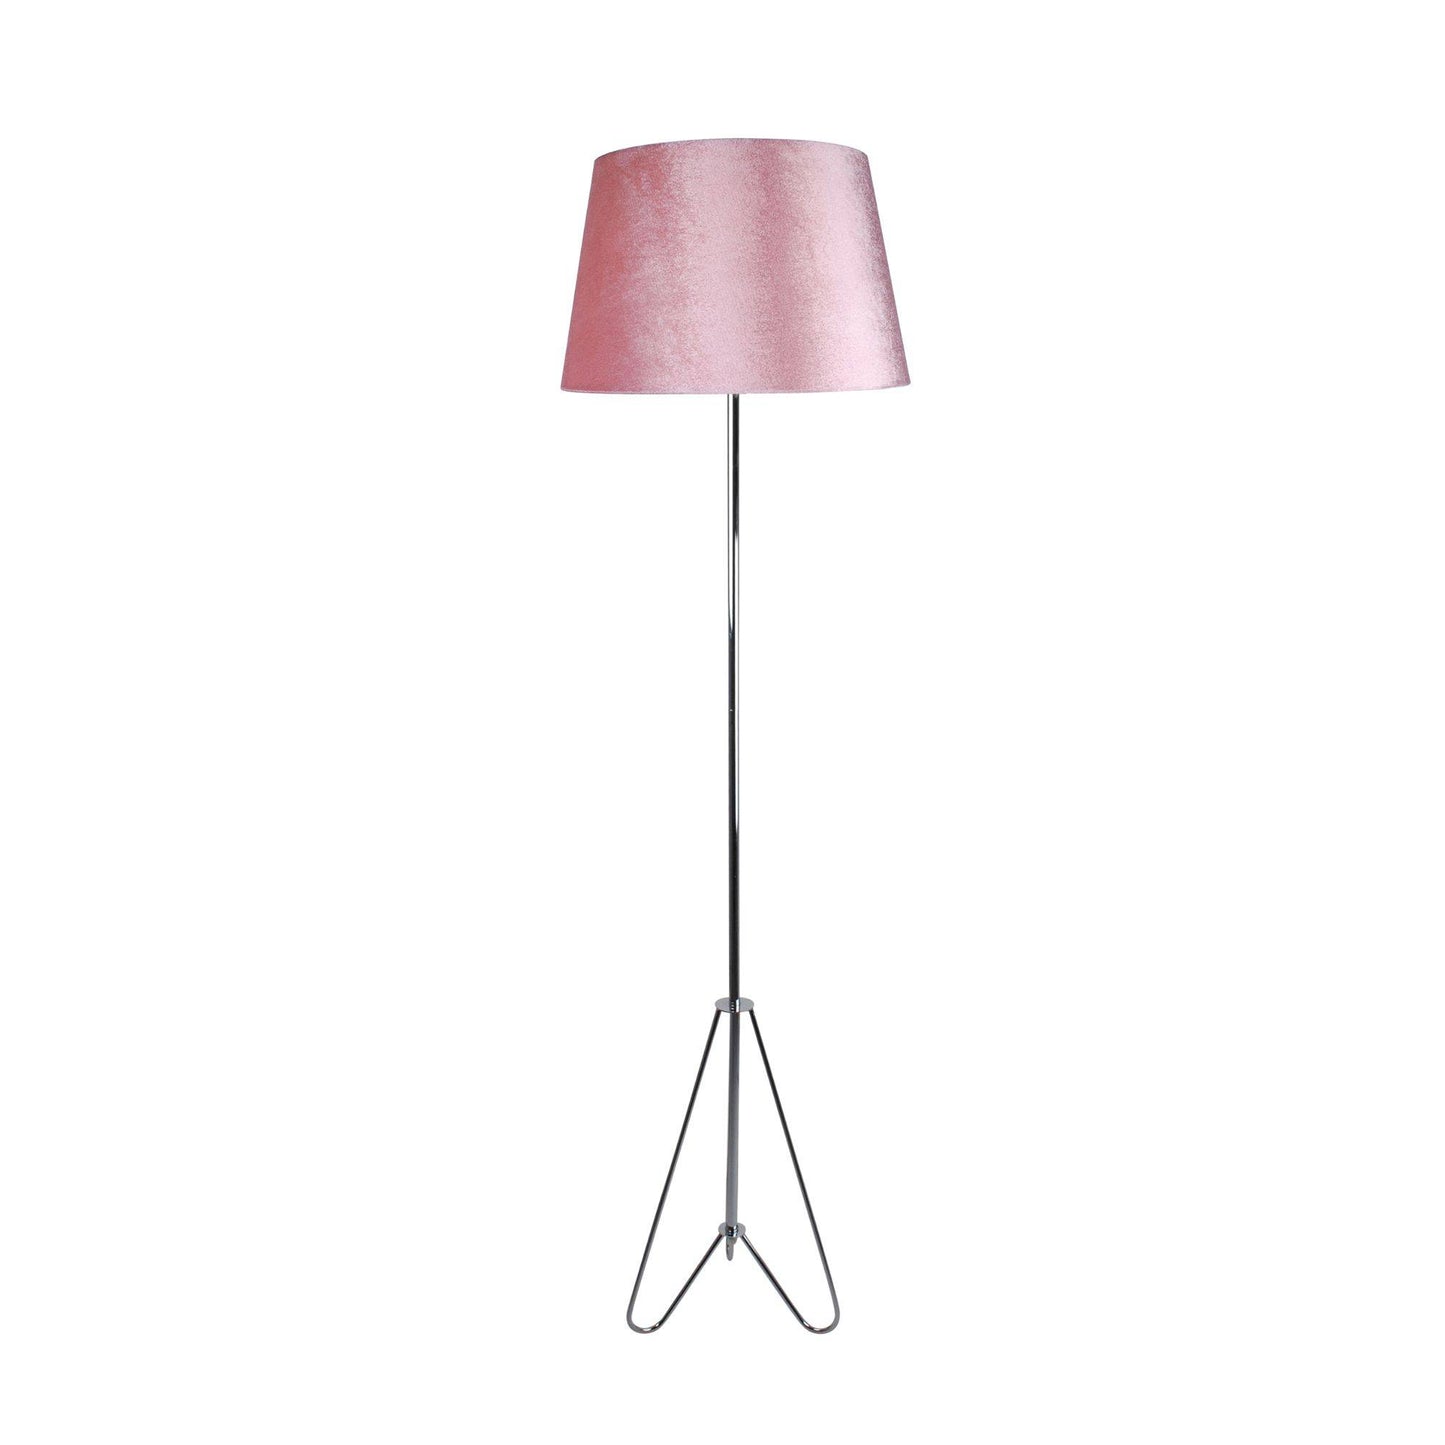 Katya Blush Pink and Polished Chrome 160cm Floor Lamp